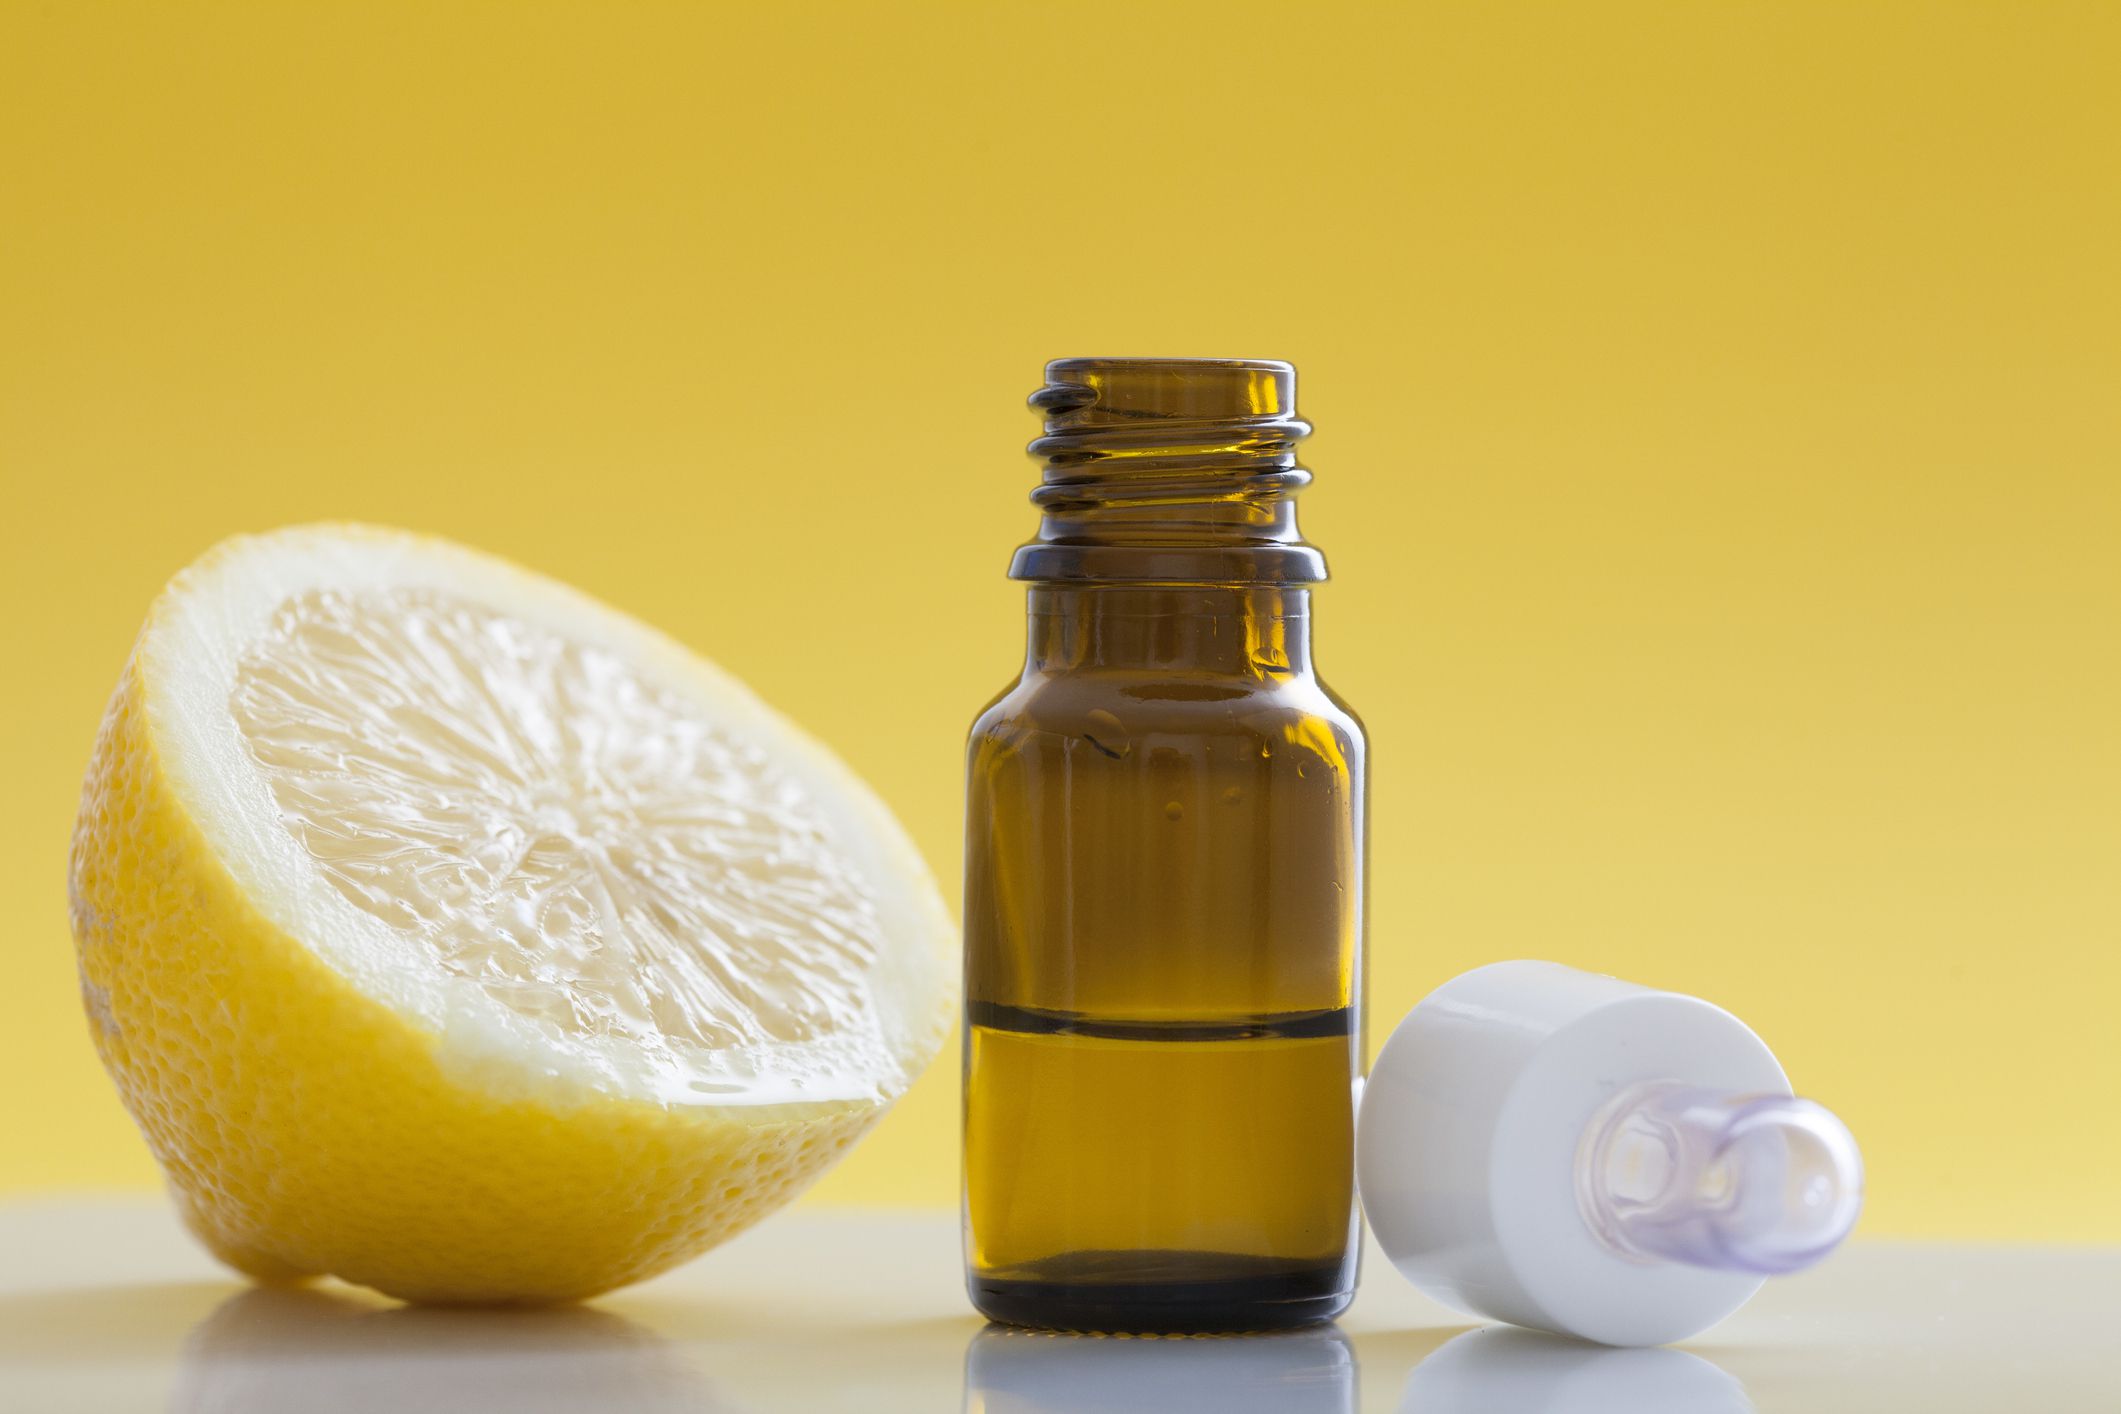 Осветление волос лимоном: способы, рецепты, отзывы